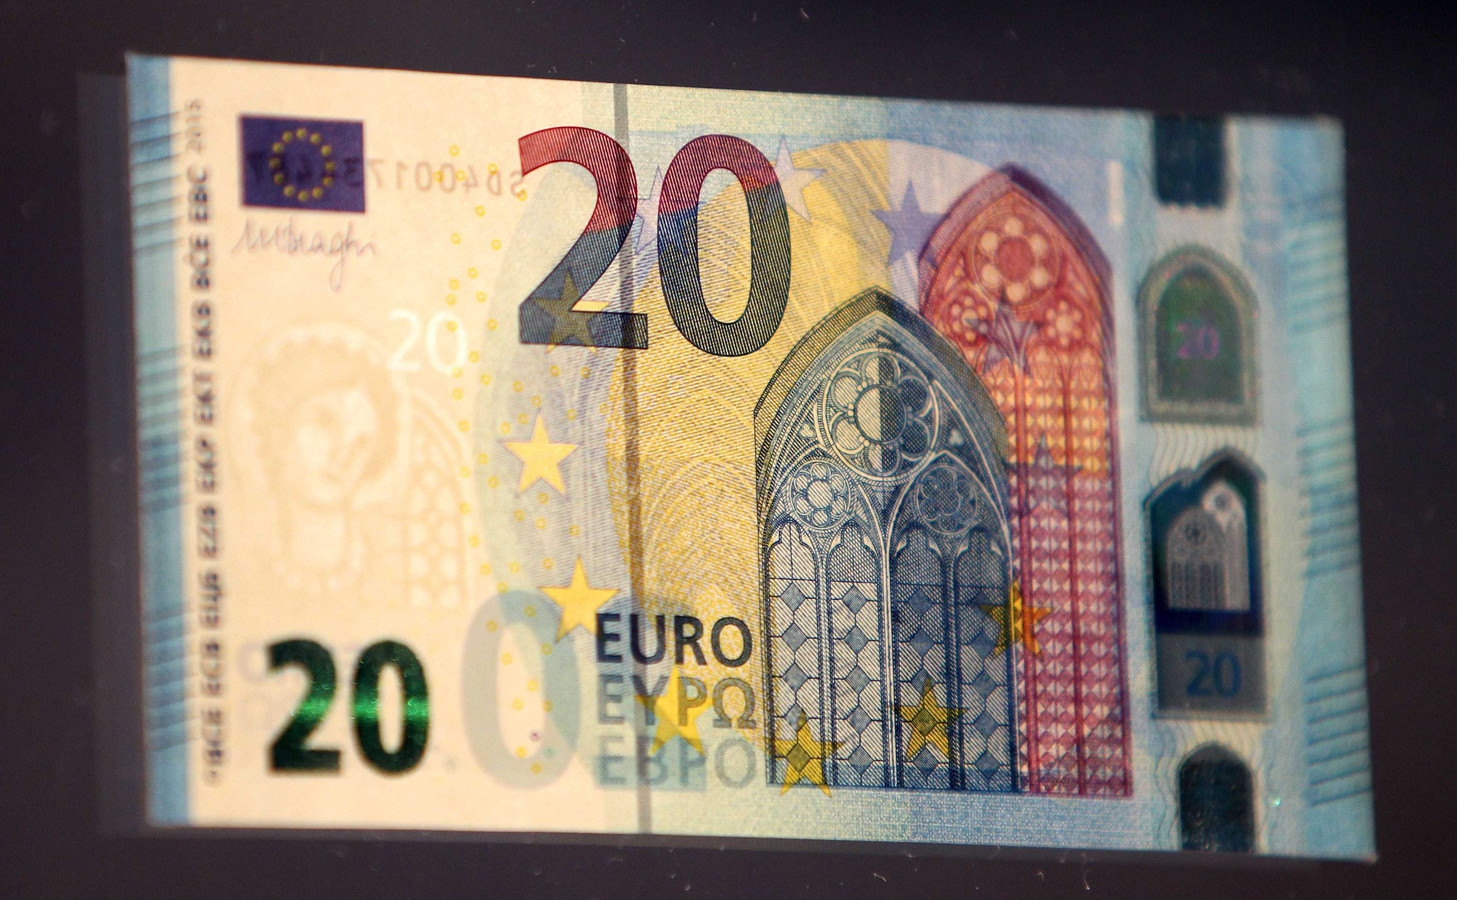 Misbruik Boek Academie Belgische bende sjoemelt met briefjes van 20 en 50 euro: 'winkeliers, pas  op geplakte biljetten' | Foto | AD.nl